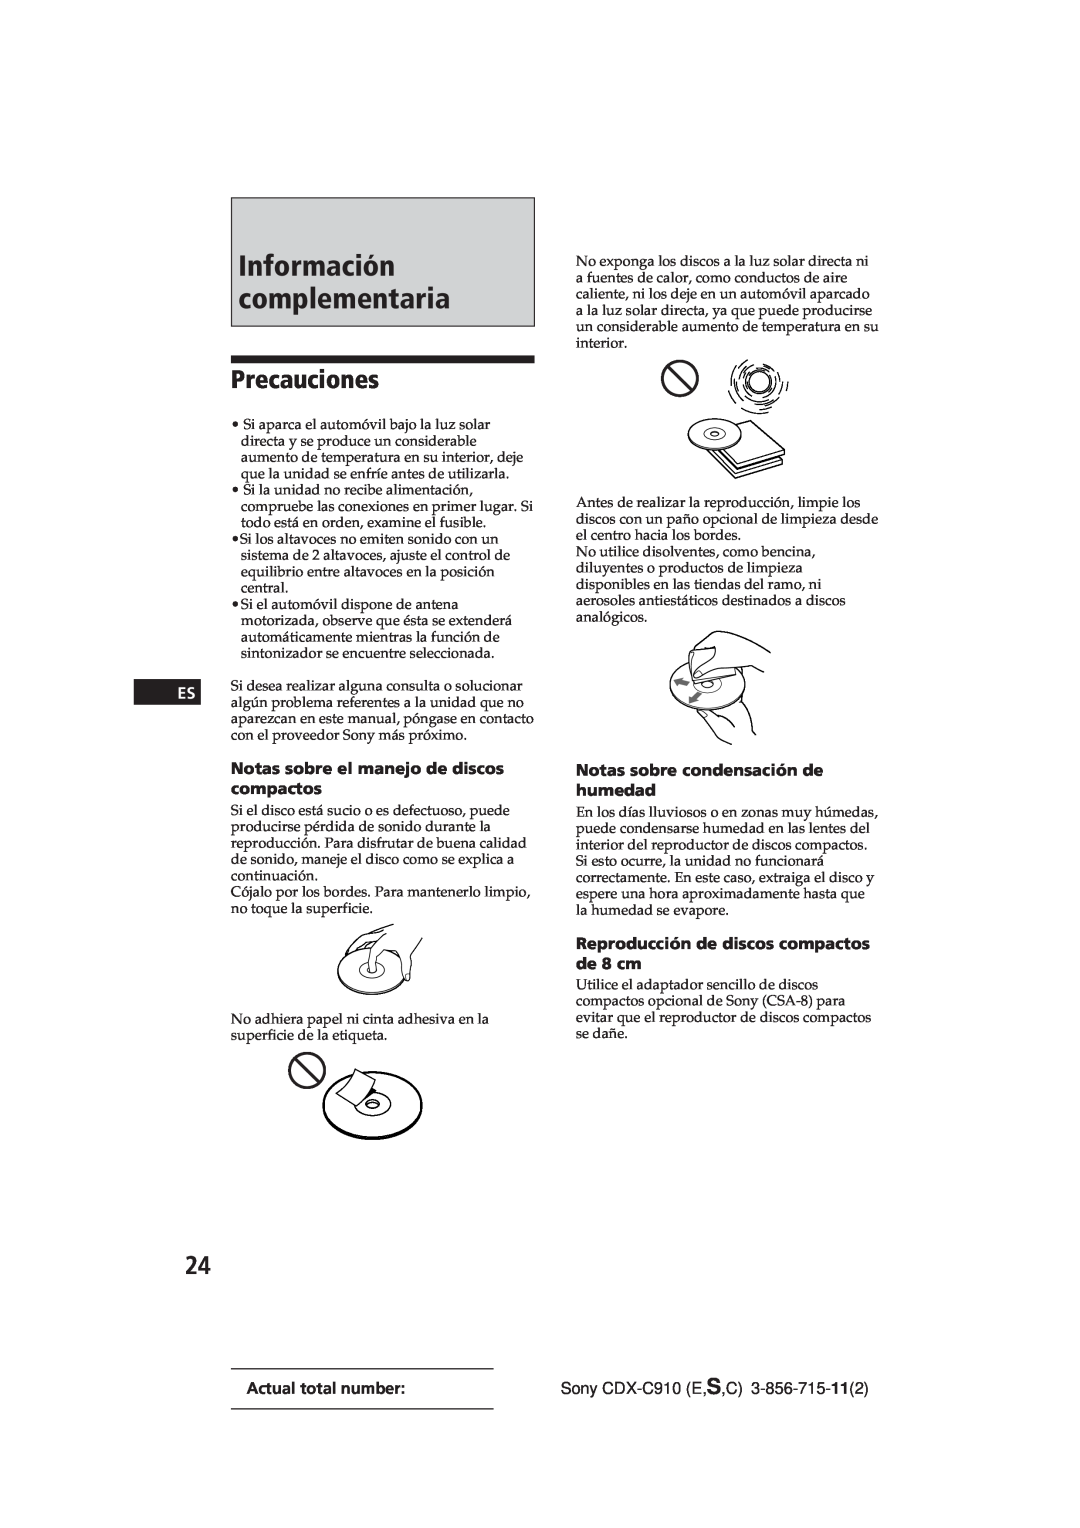 Sony CDX-C910 Información complementaria, Precauciones, Notas sobre el manejo de discos, compactos, Actual total number 